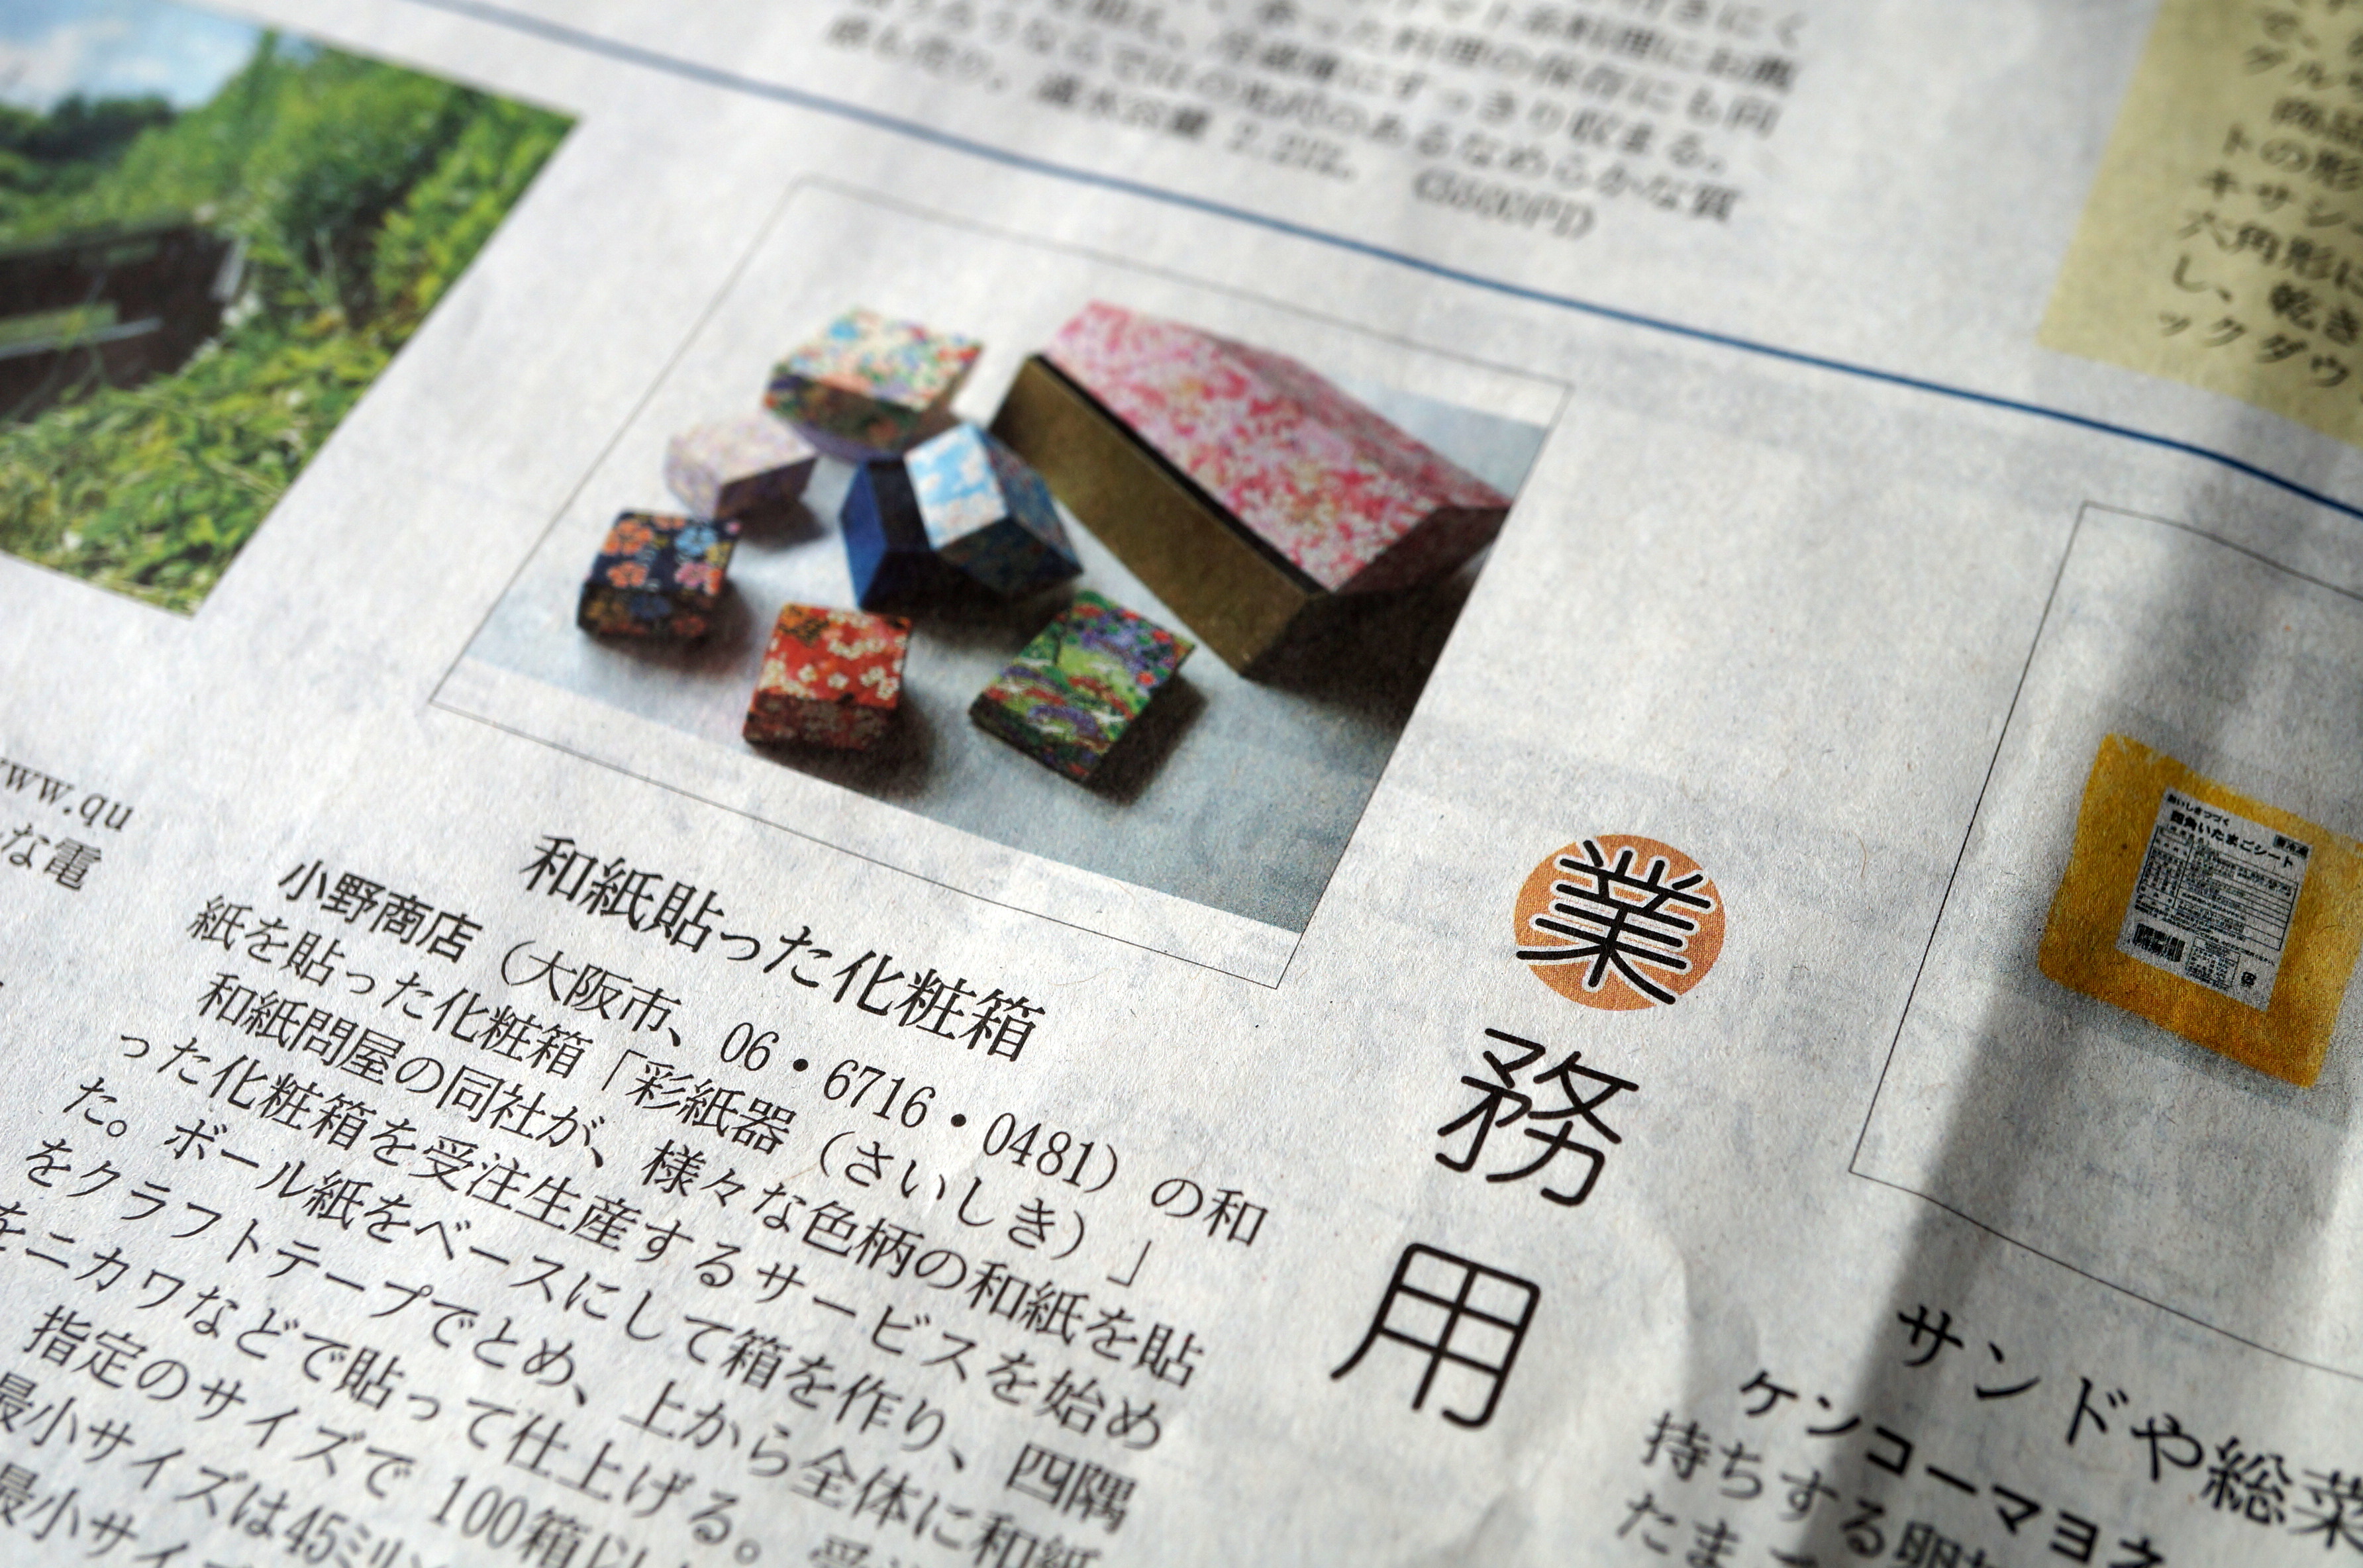 日経MJに小野商店が手掛ける貼り箱の新たな取り組みが写真入りの記事で掲載されました